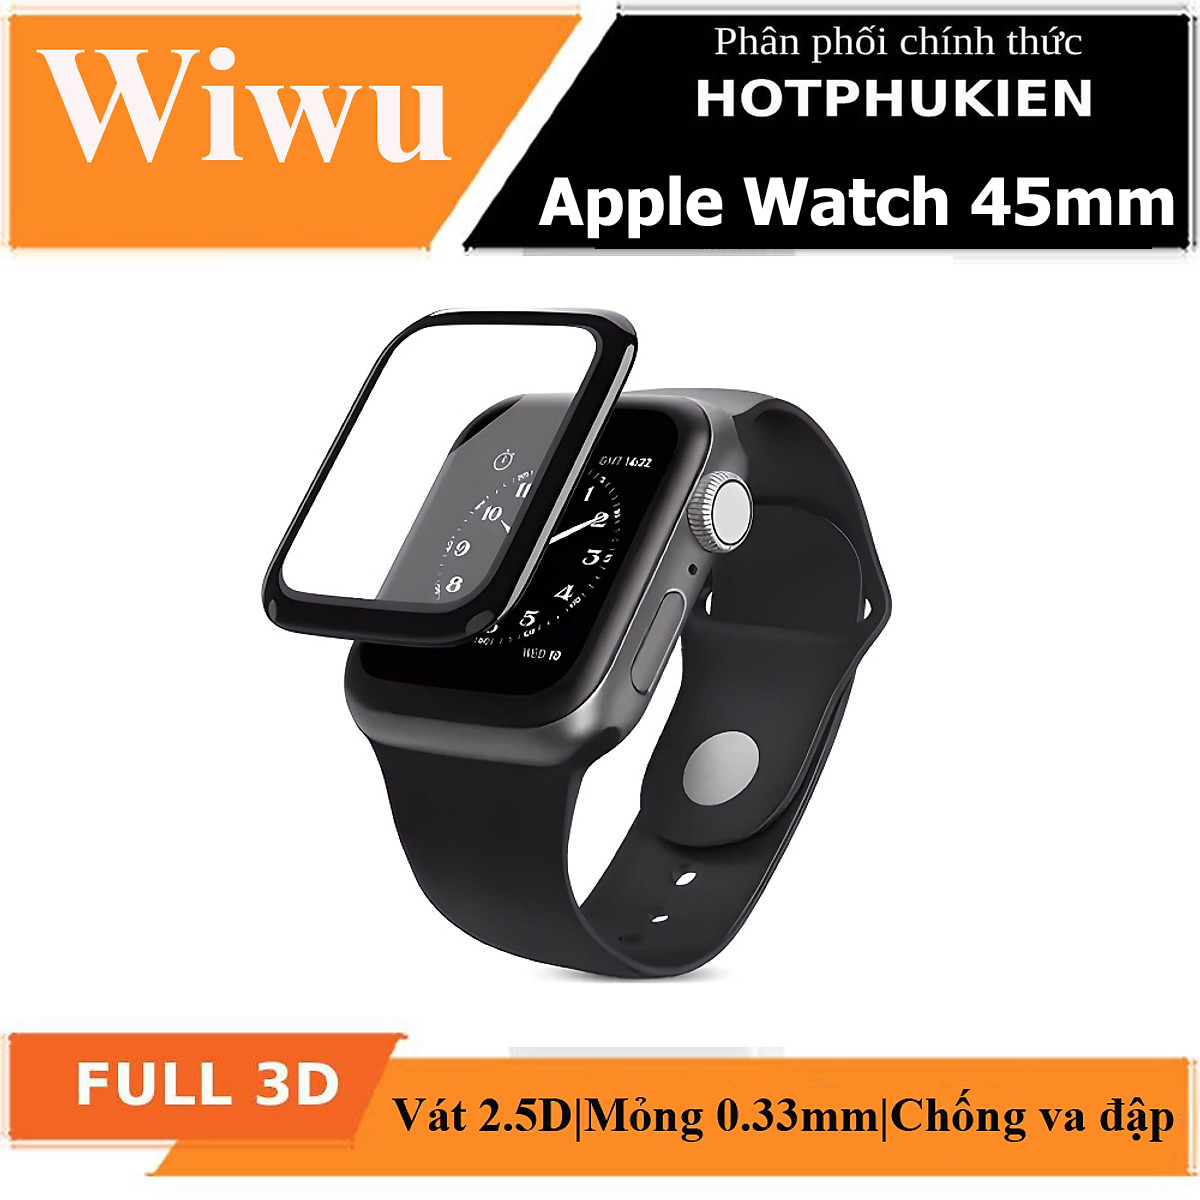 Bộ 2 miếng dán màn hình kính cường lực Full 3D cho Apple Watch 45mm hiệu WIWU iVista